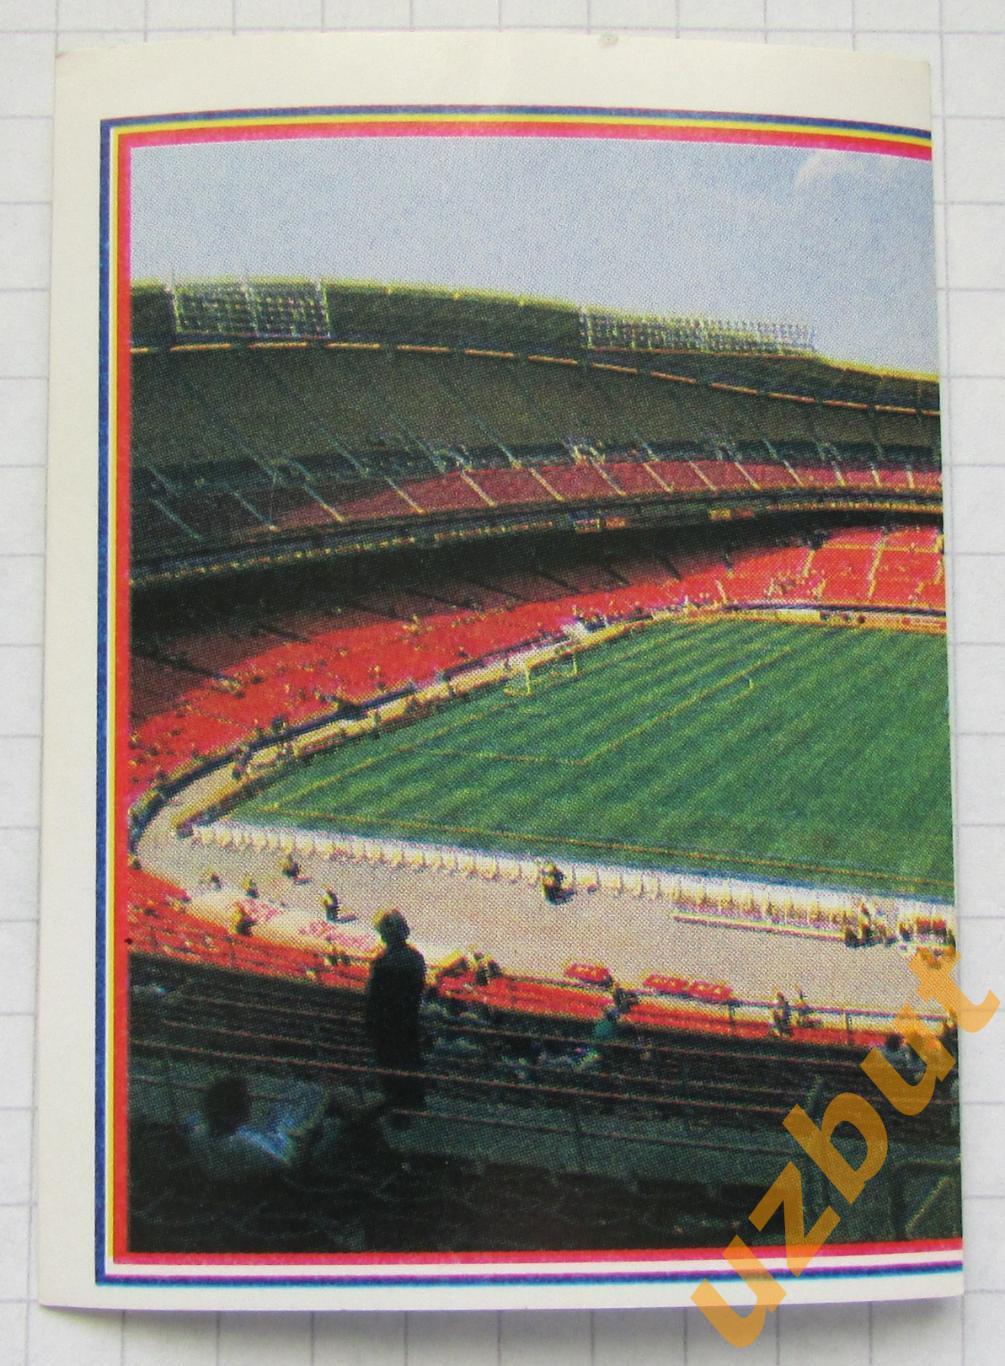 Наклейка Стадион Нью-Йорк 1 № 281 Euroflash ЧМ 1994 США